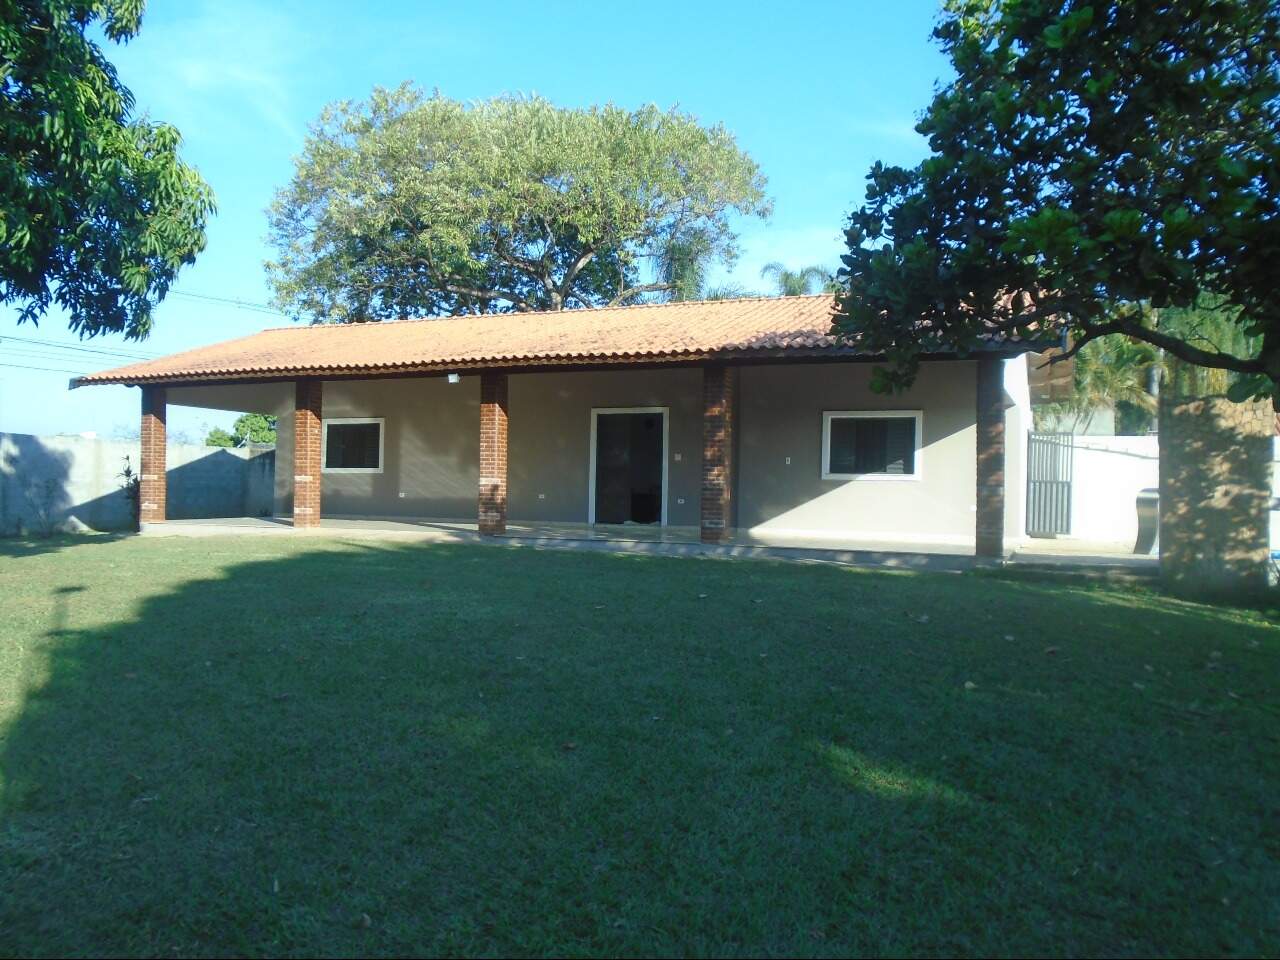 Chácara à venda, 2 quartos, 10 vagas, no bairro Estância Lago Azul (Ártemis) em Piracicaba - SP